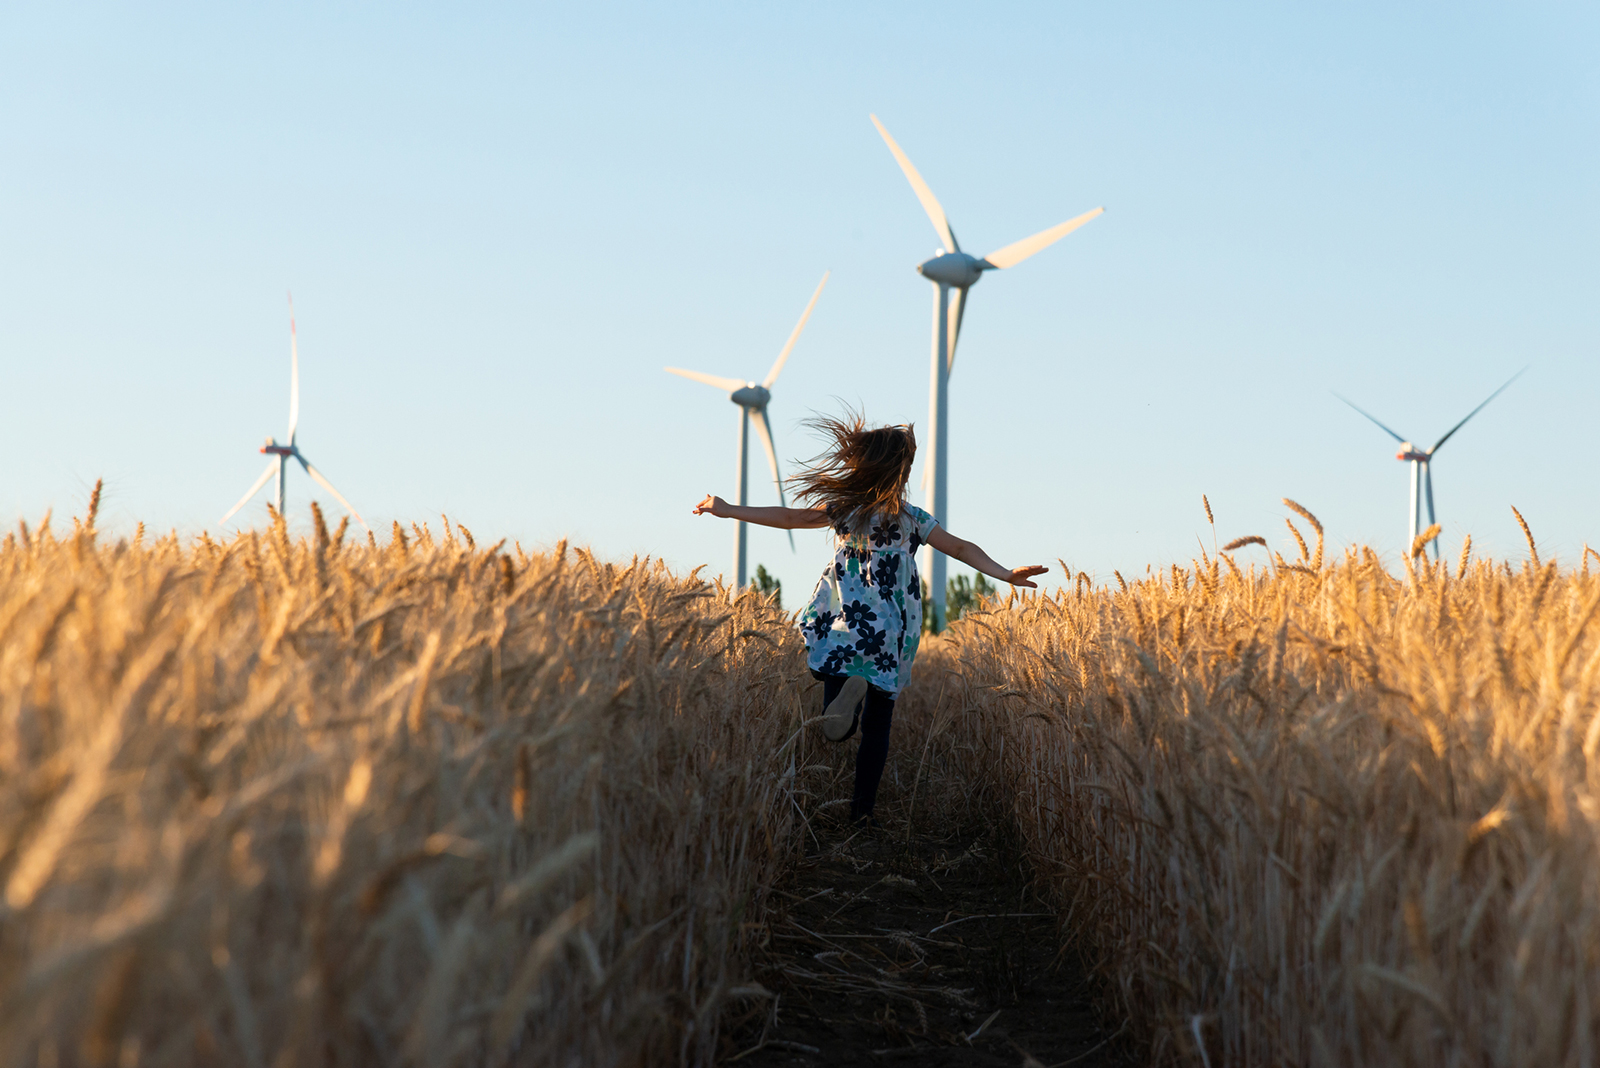 Mädchen rennt durch ein Kornfeld mit Windrädern im Hintergrund